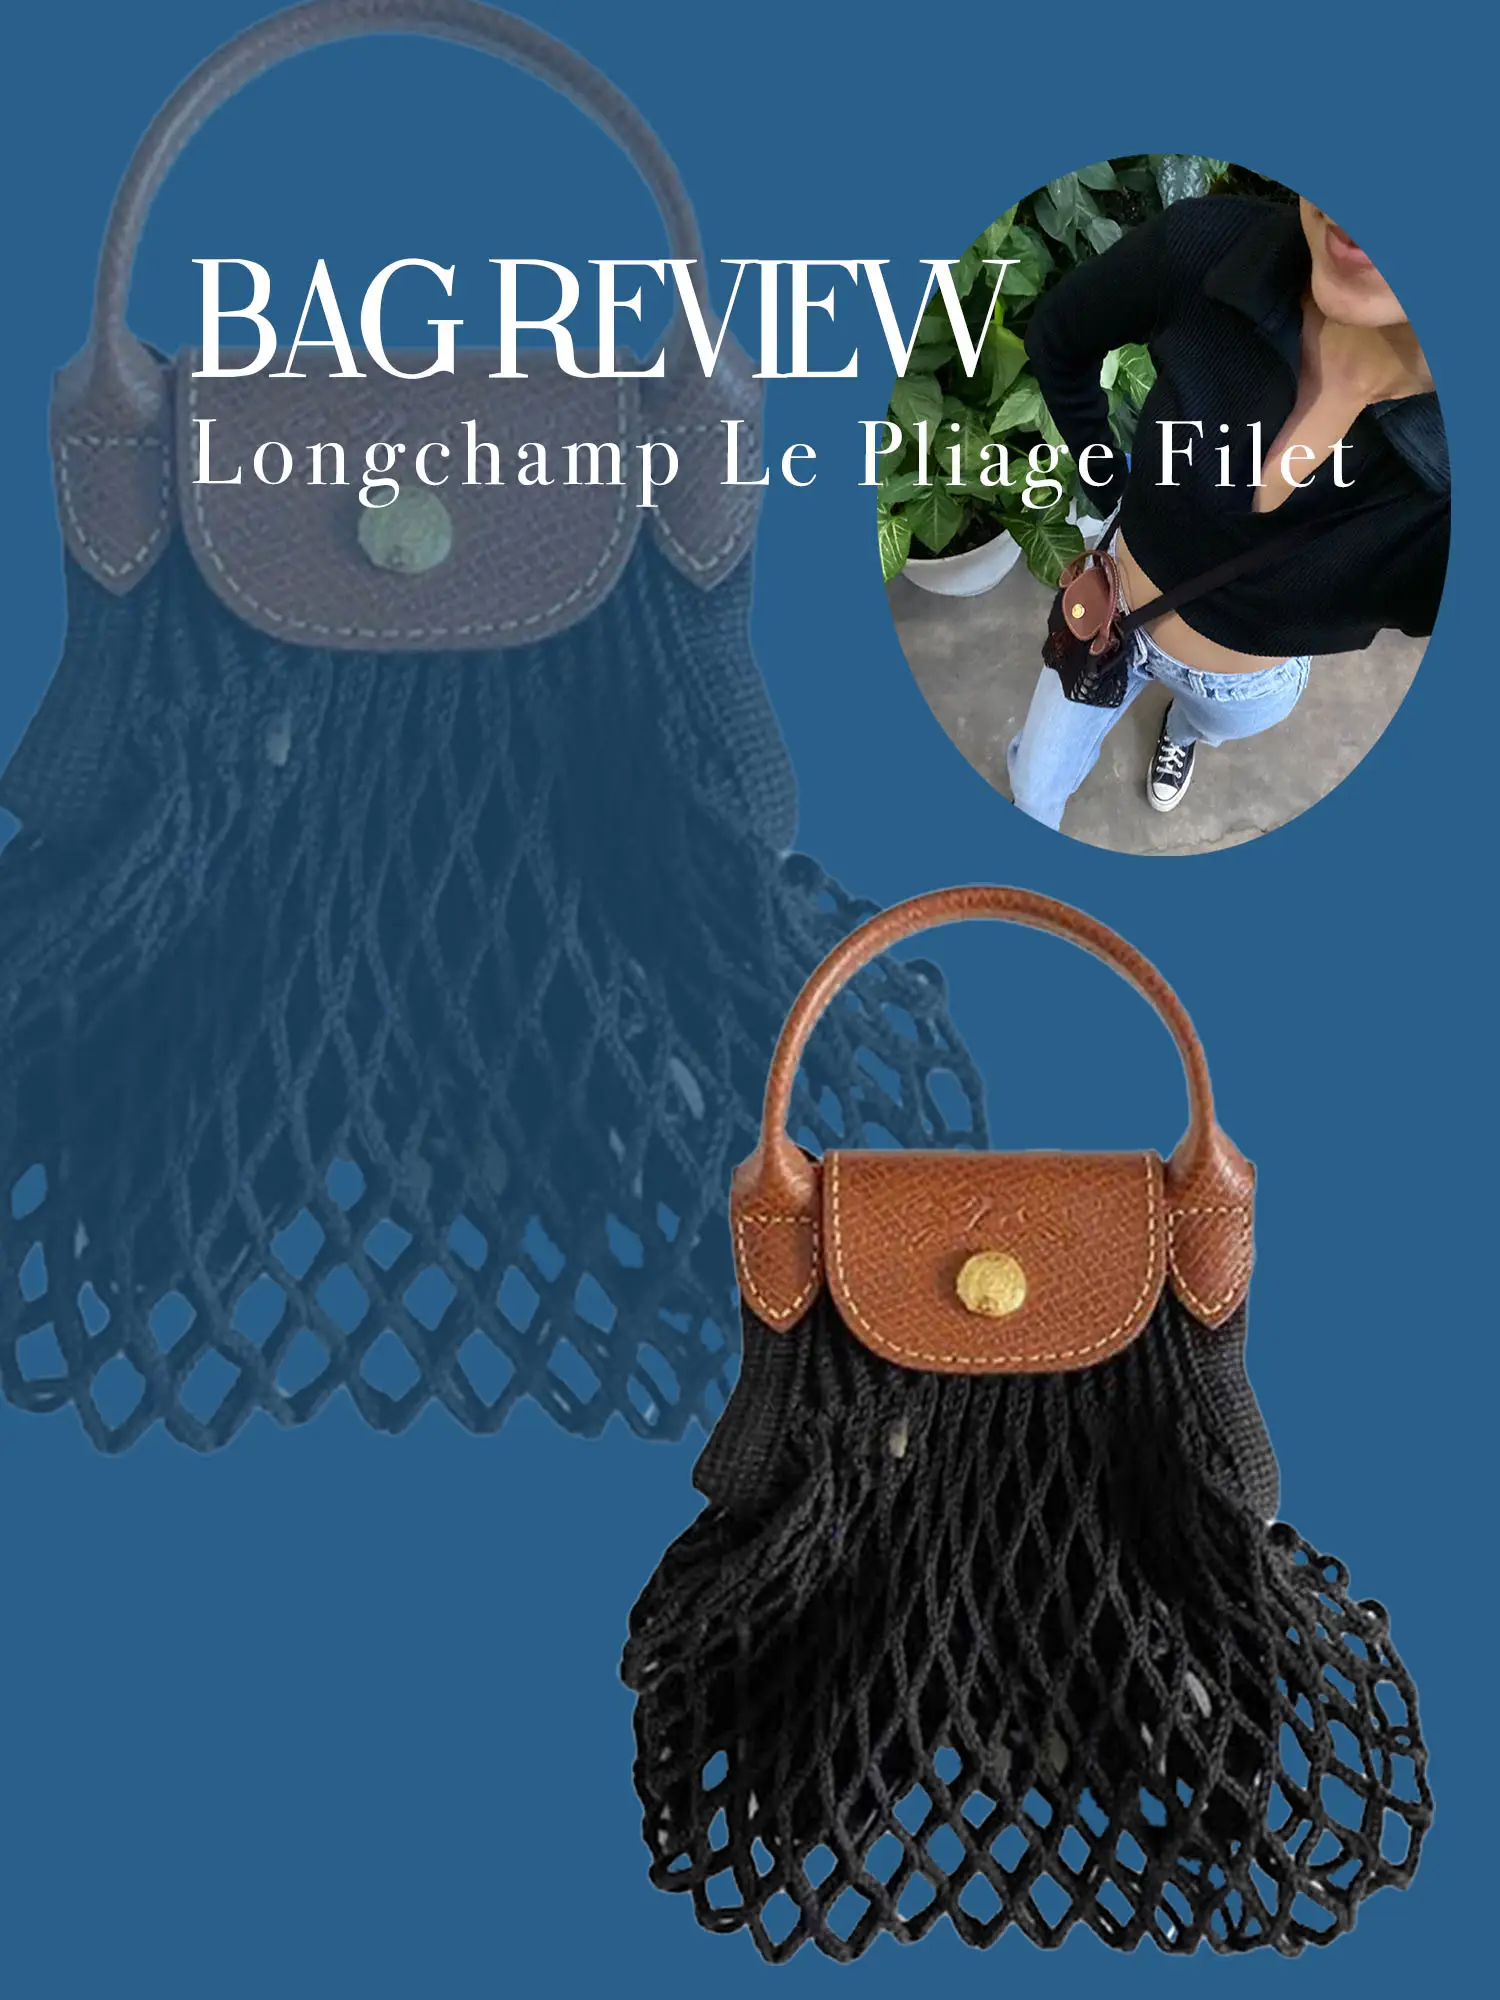 BAG REVIEW (Longchamp Le Pliage Filet)